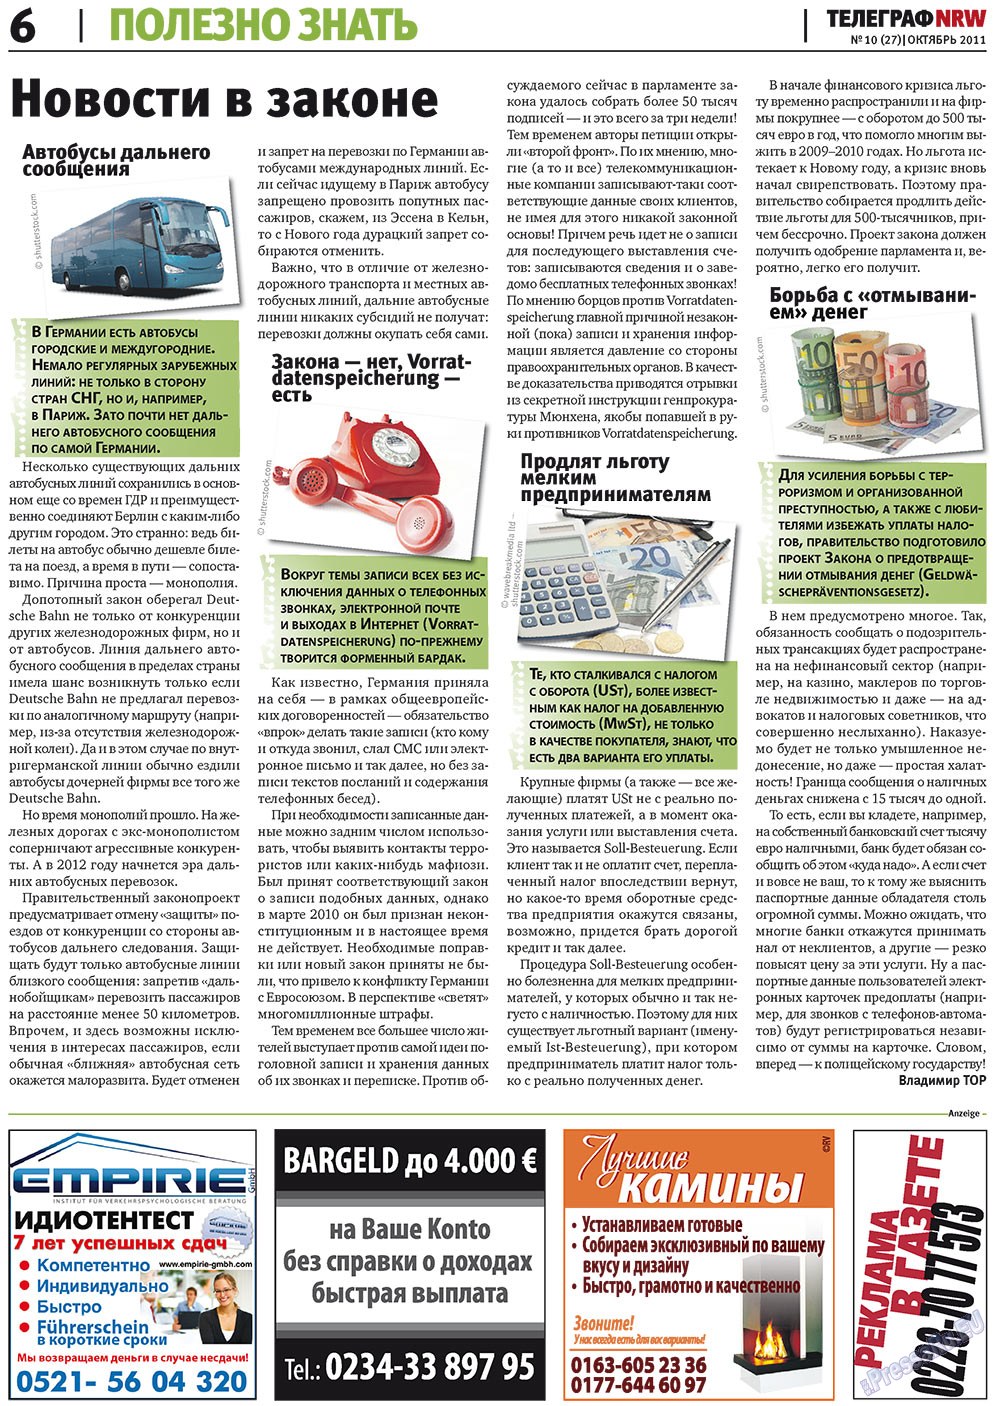 Телеграф NRW (газета). 2011 год, номер 10, стр. 6